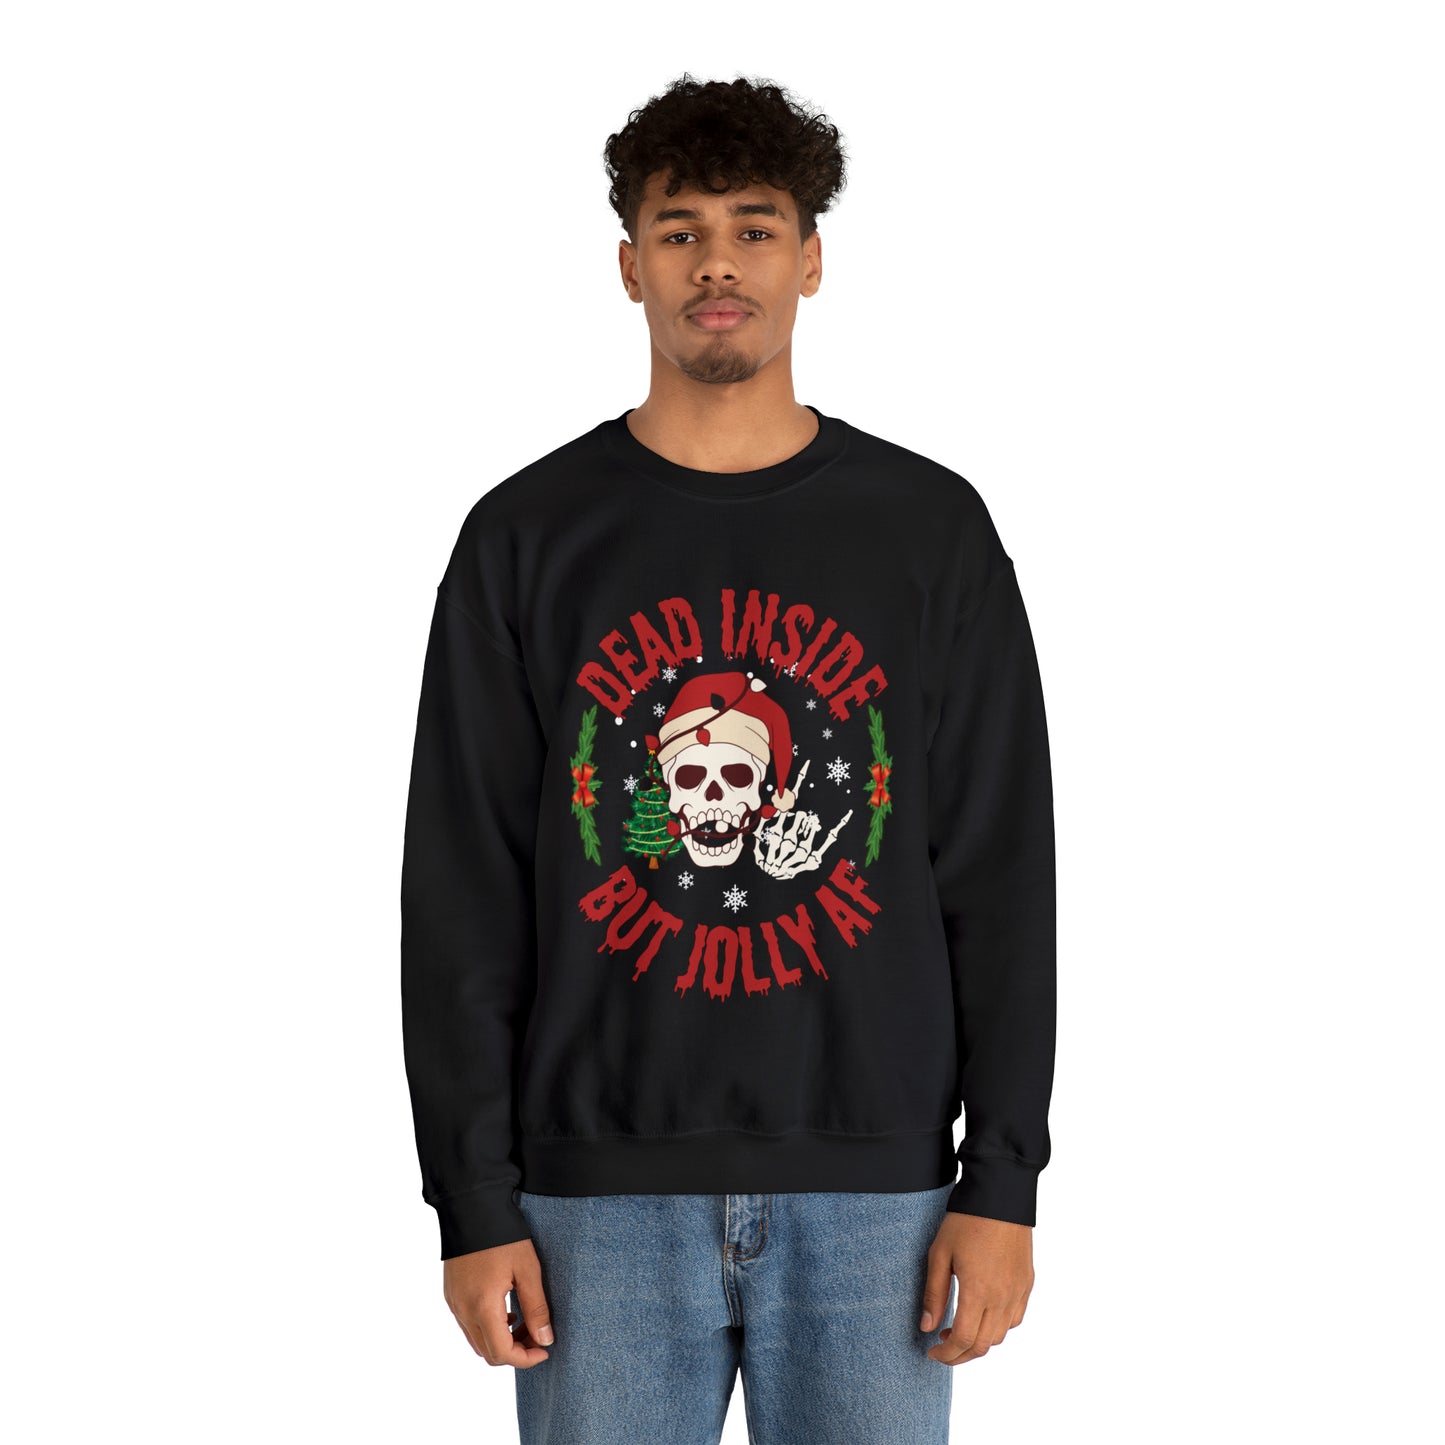 "Dead inside but jolly AF" Skull Crewneck Sweatshirt